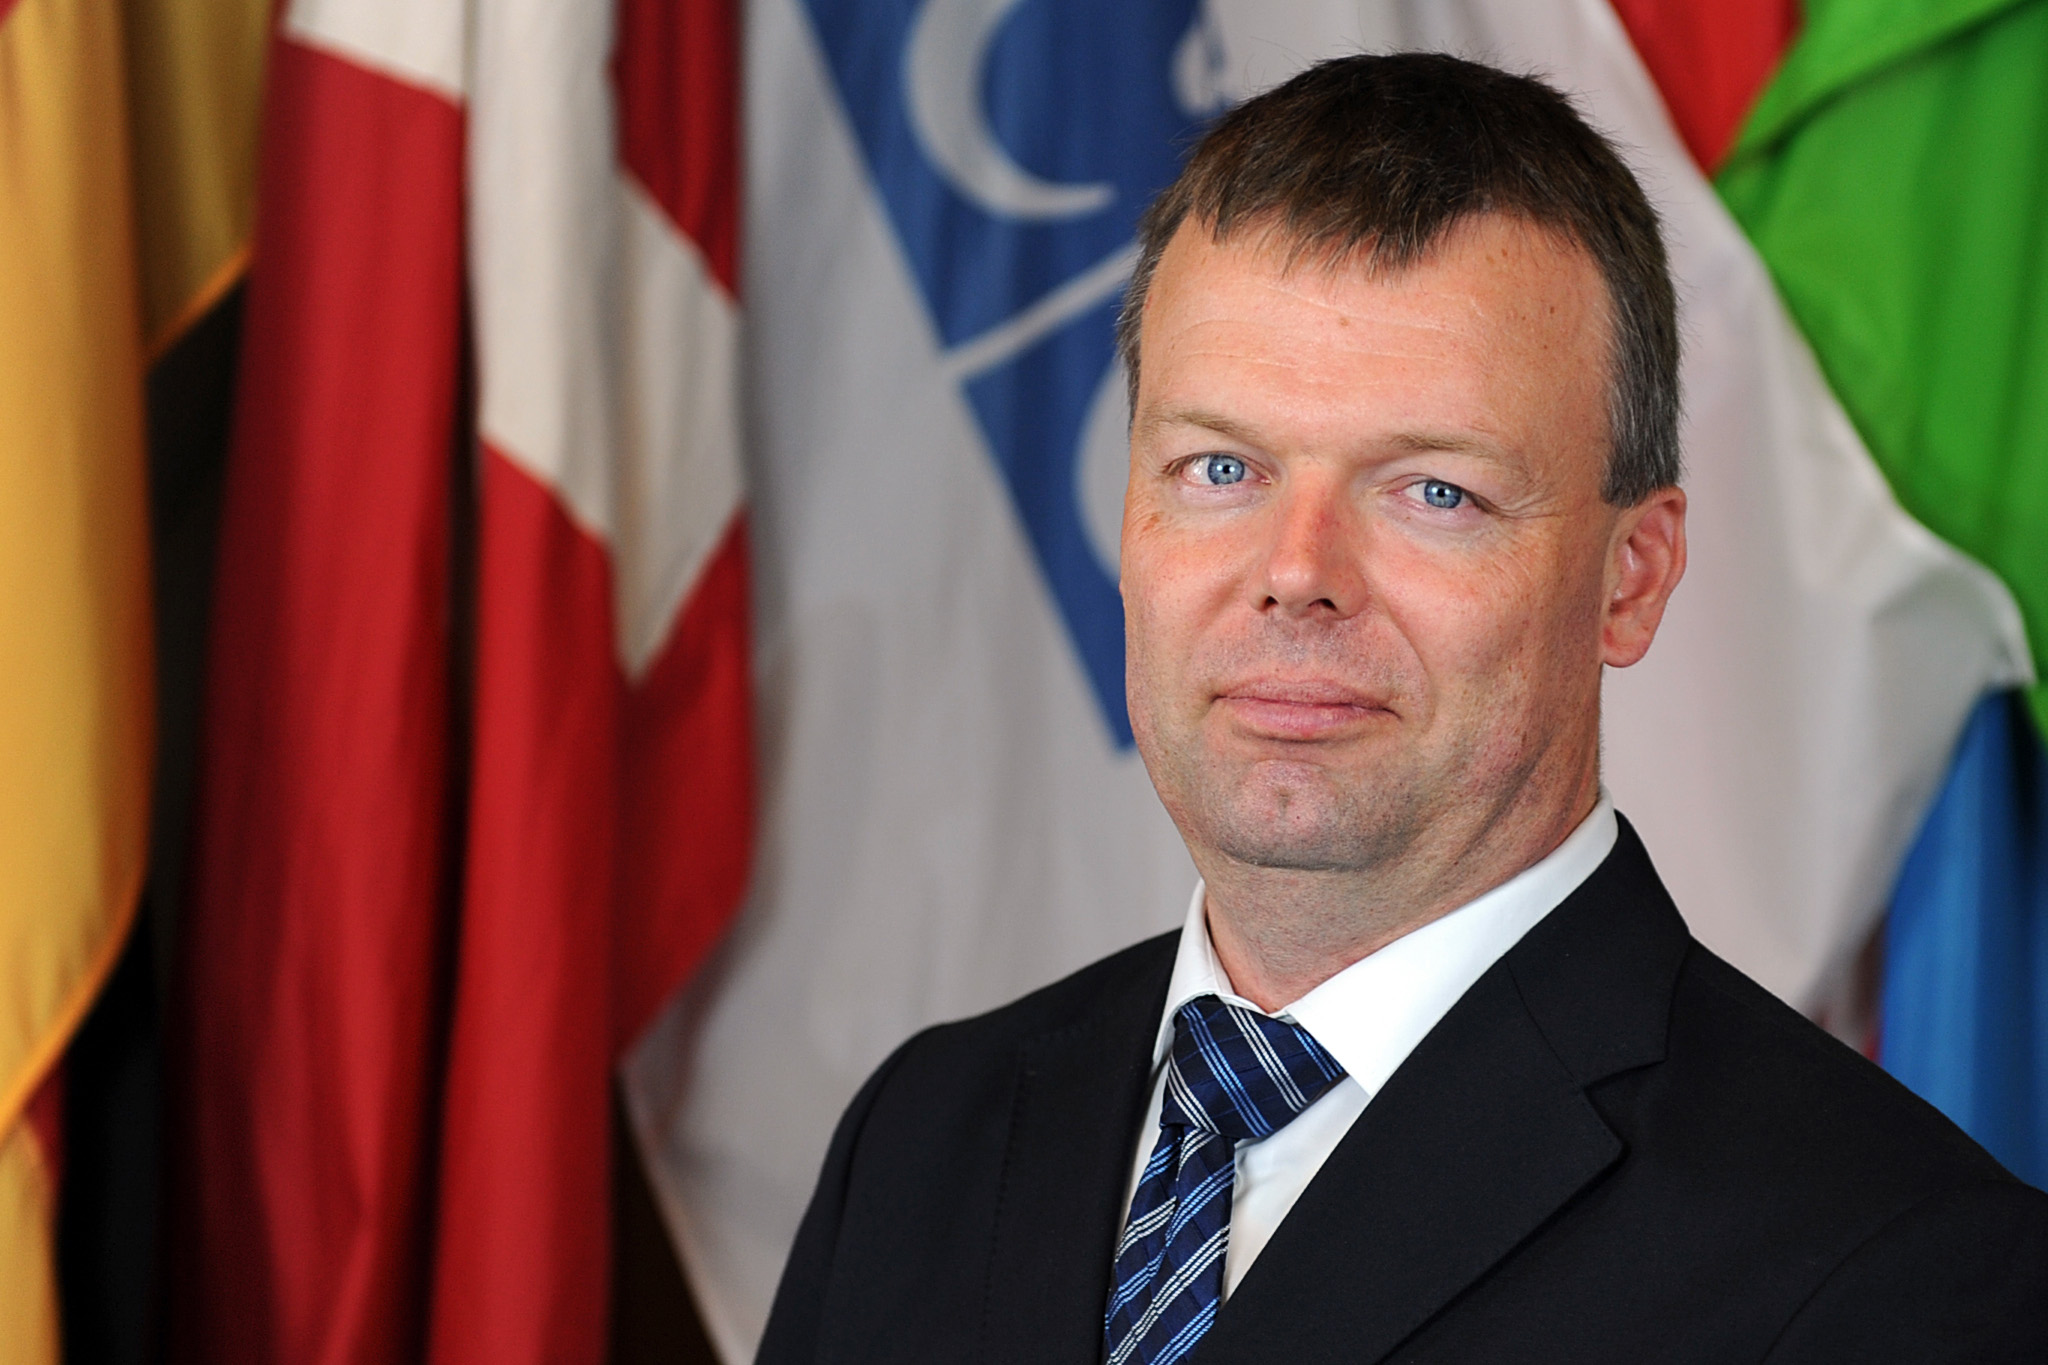 Alexander Hug ist stellvertrender Chefbeobachter der Ukraine-Spezialmission der OSZE. / Foto: Micky Kroell, OSZE / CC BY-ND 4.0